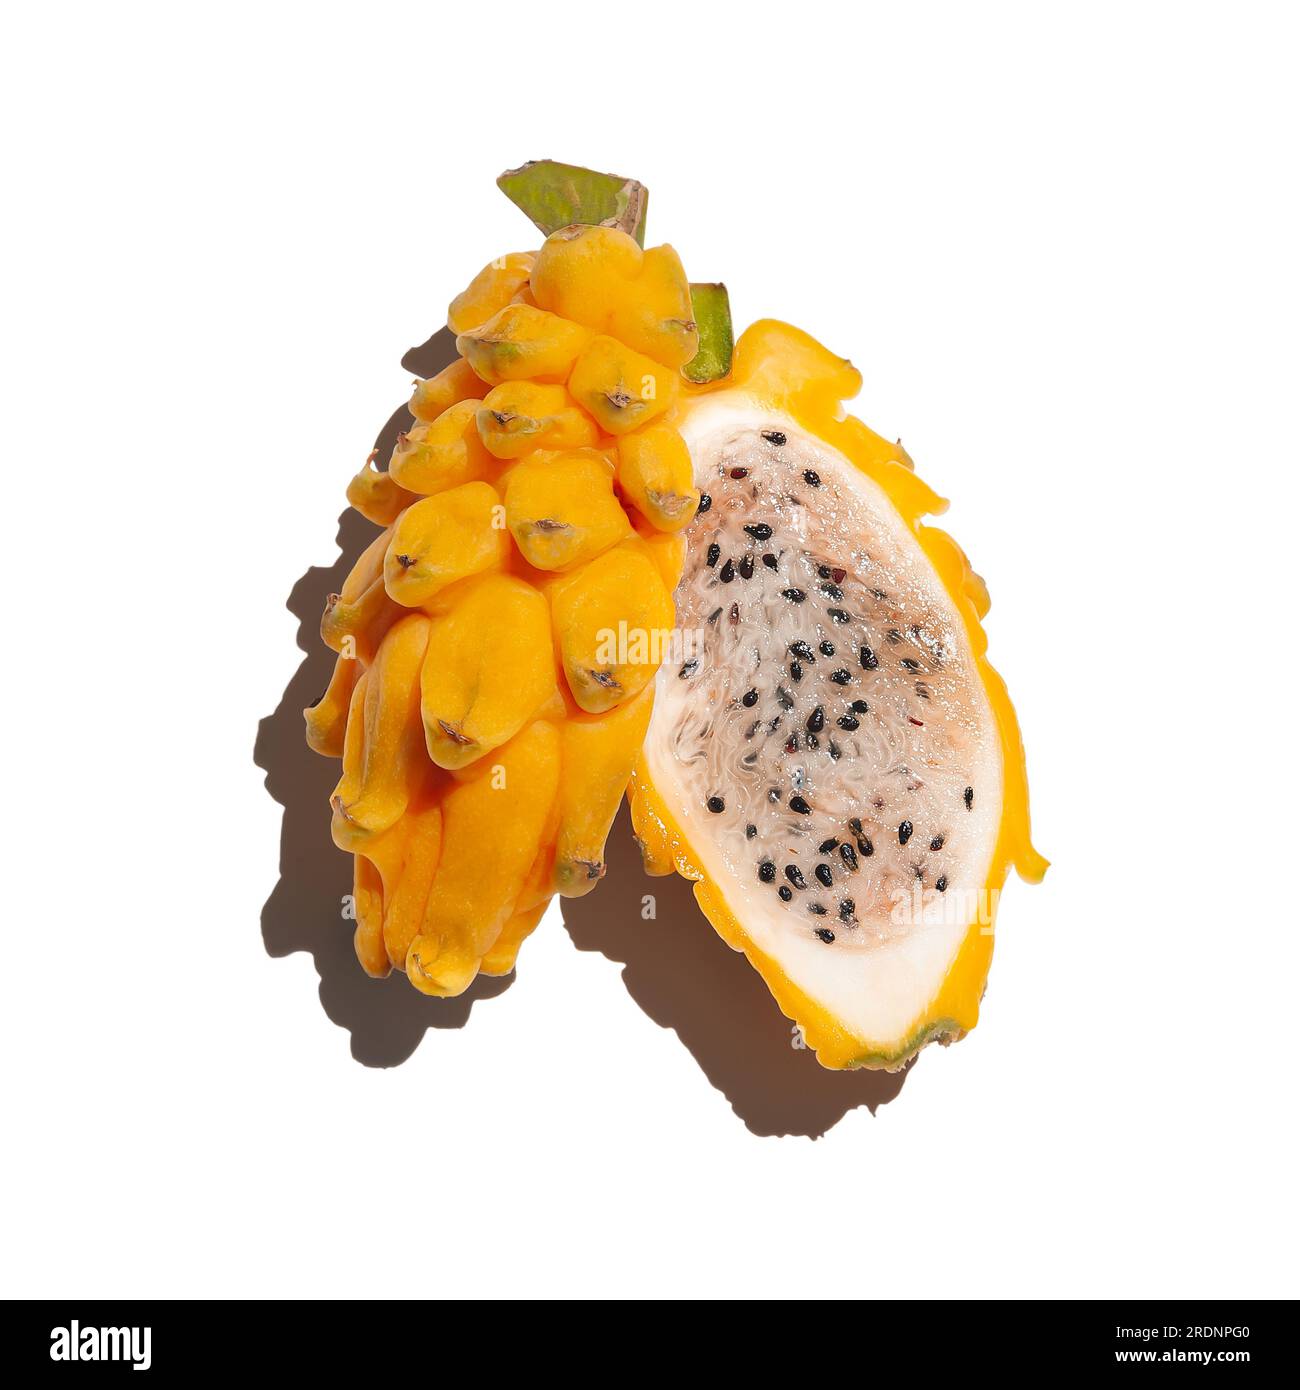 Fruit jaune mûr de pitahaya sur fond blanc, coupé en deux, lumière dure, isolé Banque D'Images